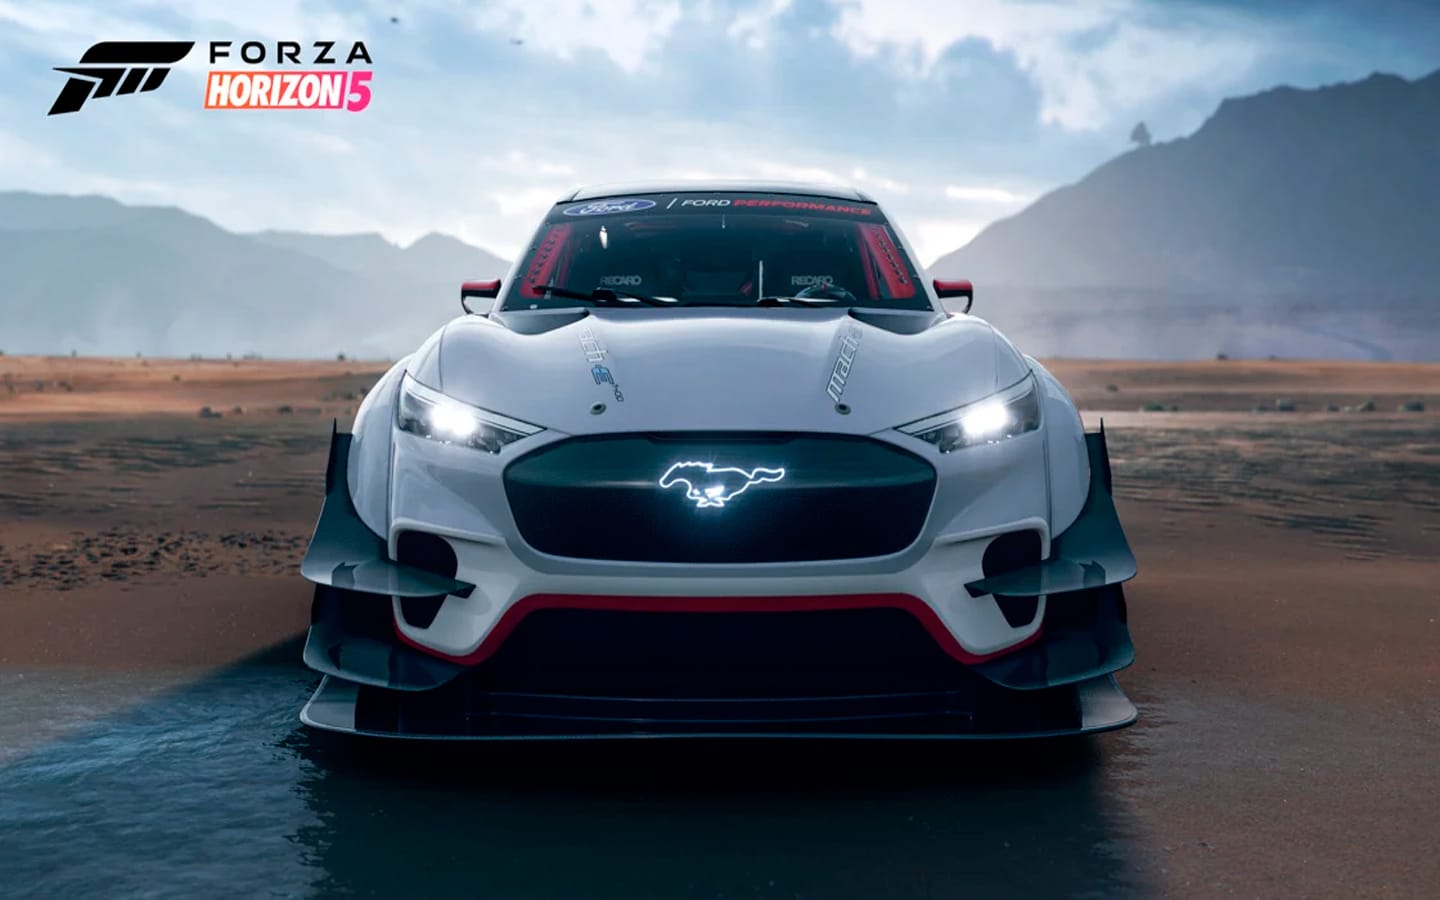 La nueva actualización de Forza Horizon 5 agrega nuevos autos y mejora las carreras online